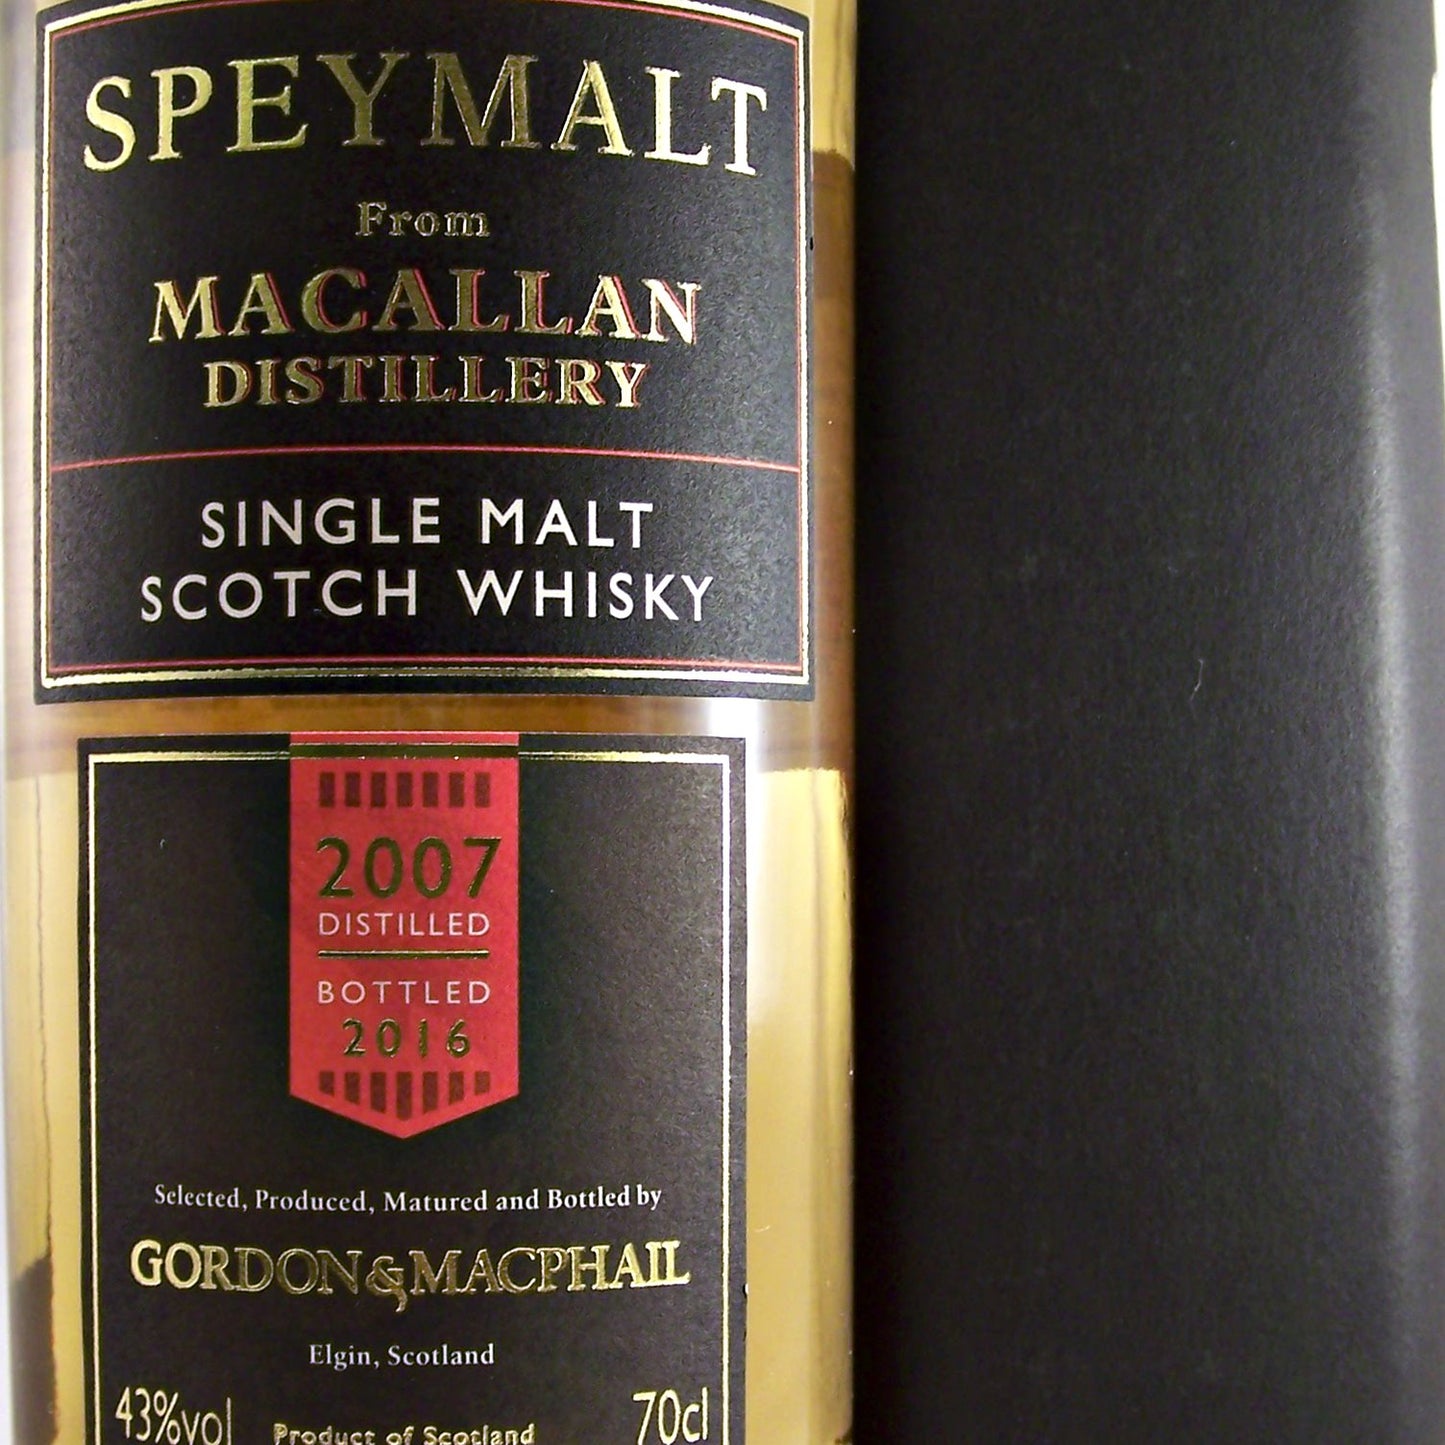 Macallan Speymalt 2007